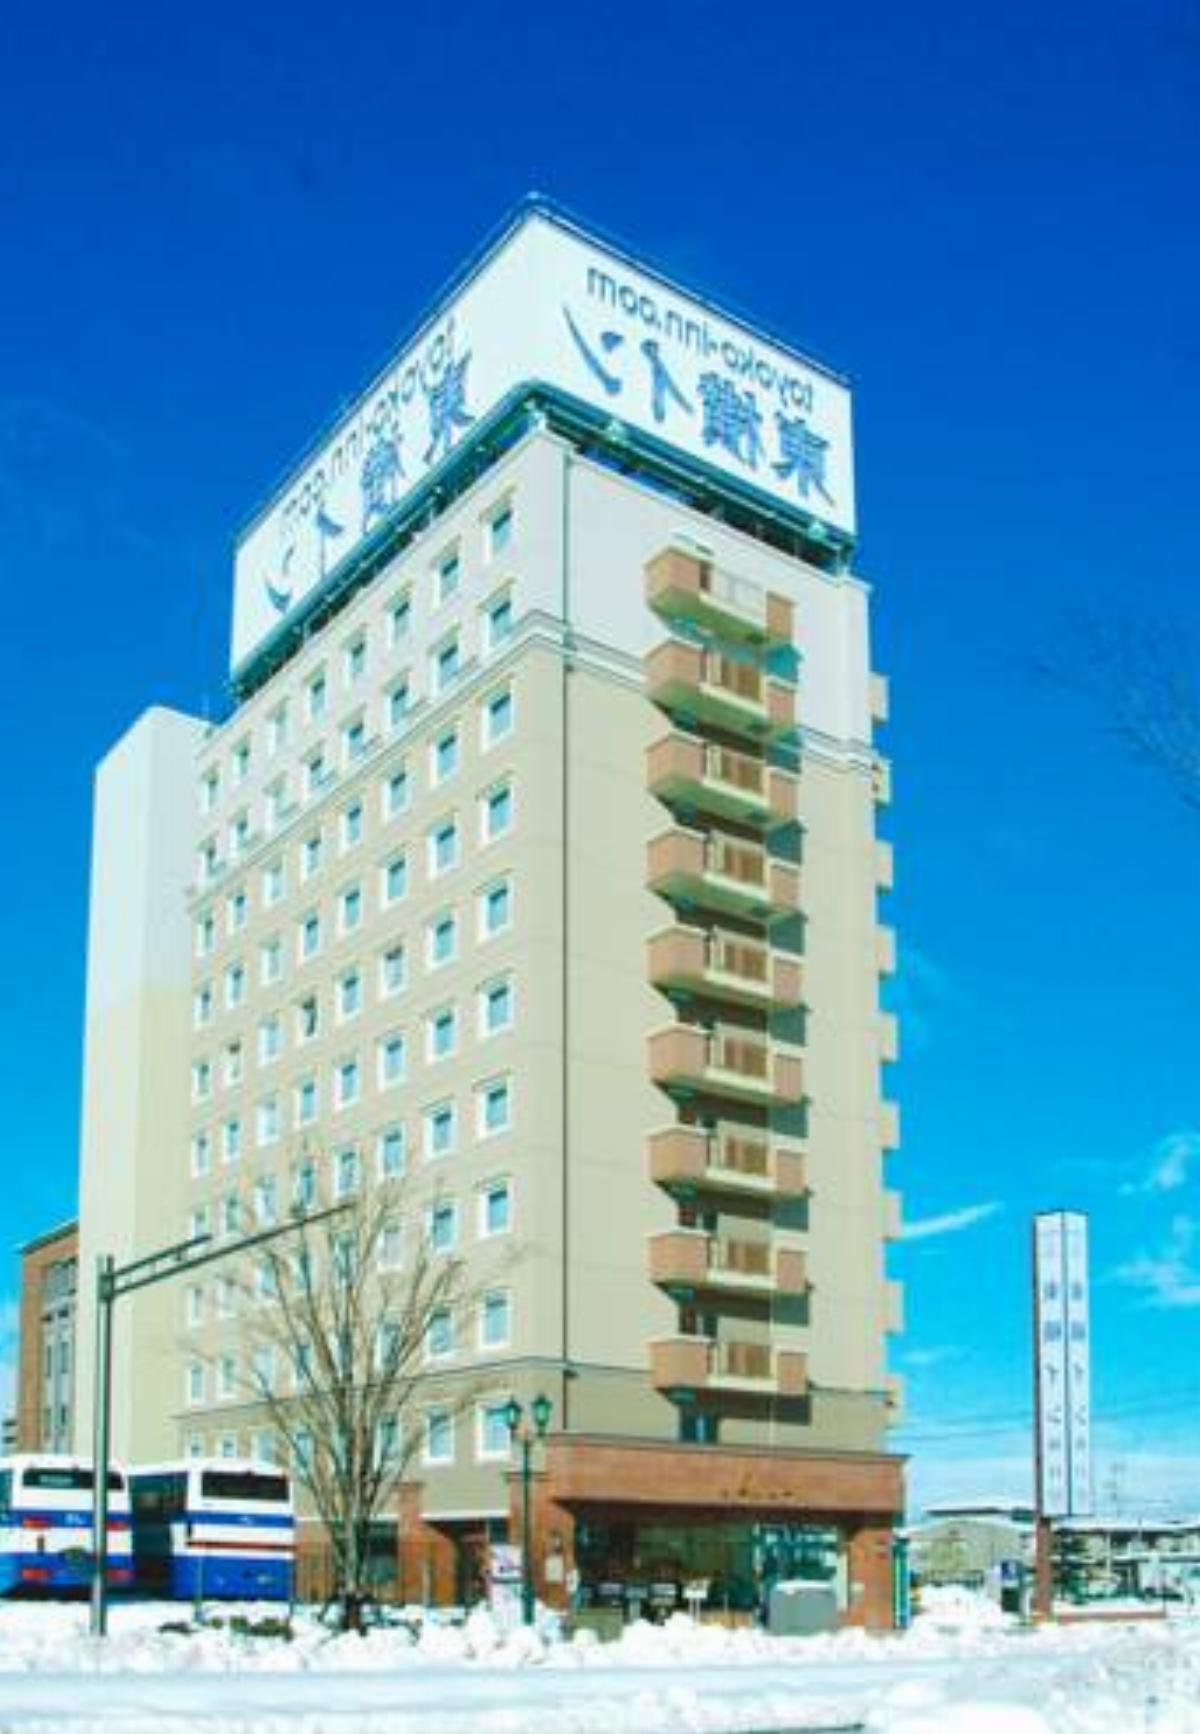 Toyoko Inn Yamagata-eki Nishi-guchi Hotel Yamagata Japan